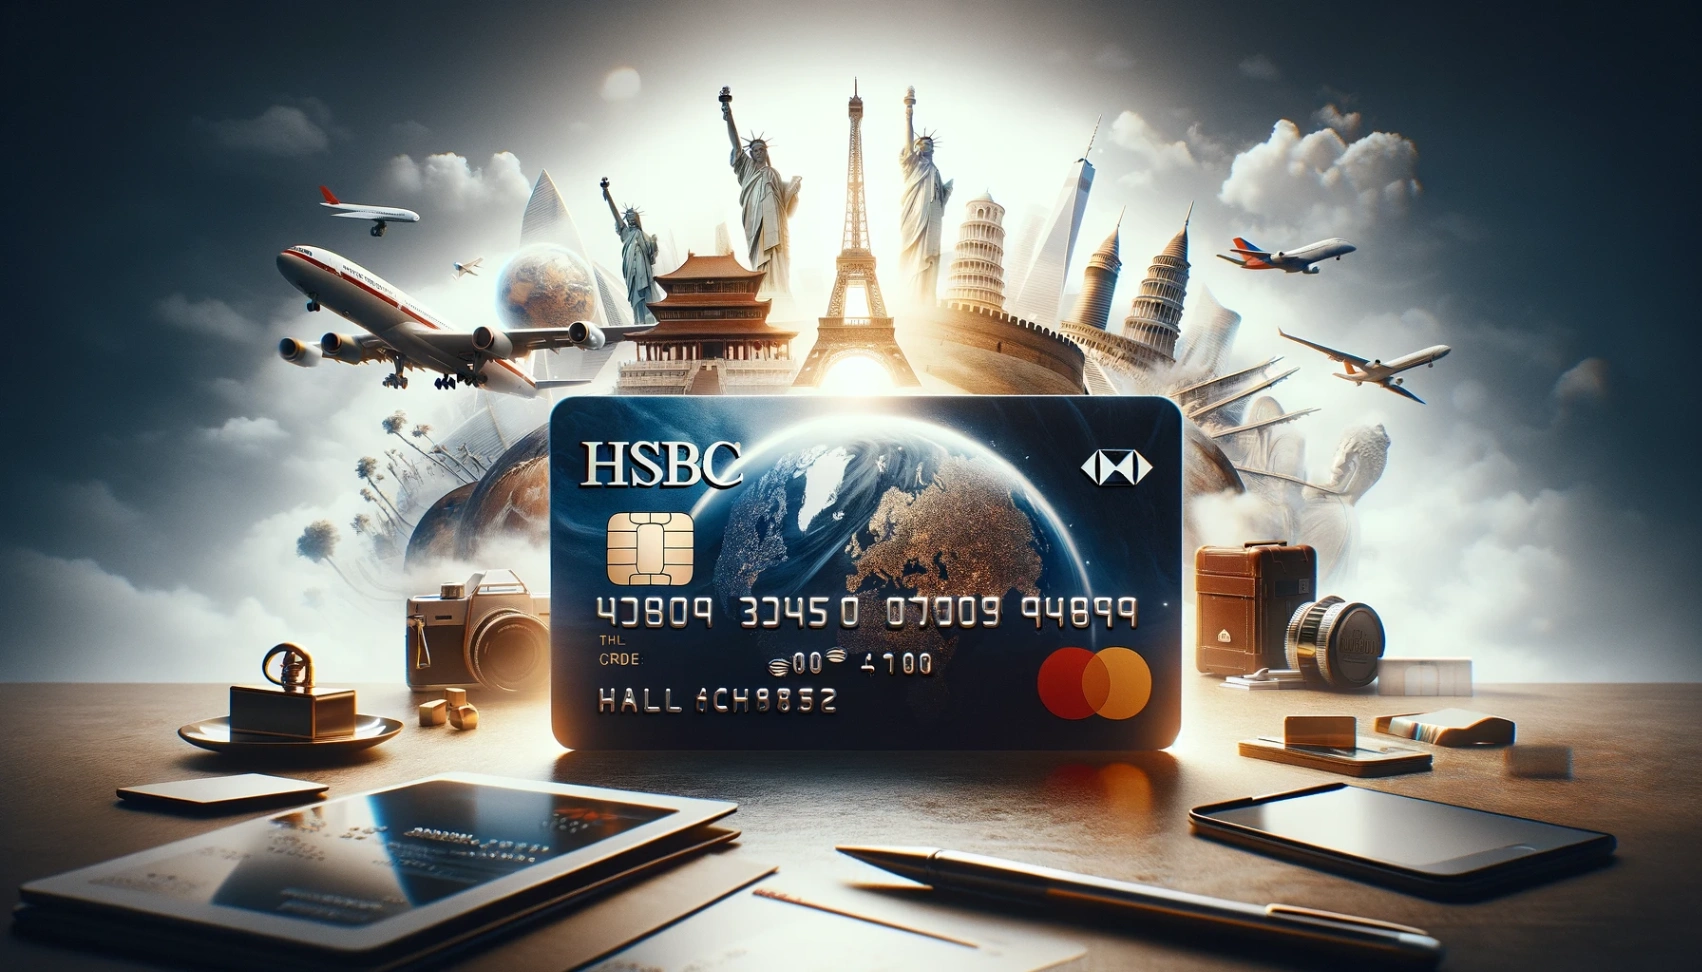 Kad Kredit HSBC - Ketahui Cara Memohon Sekarang